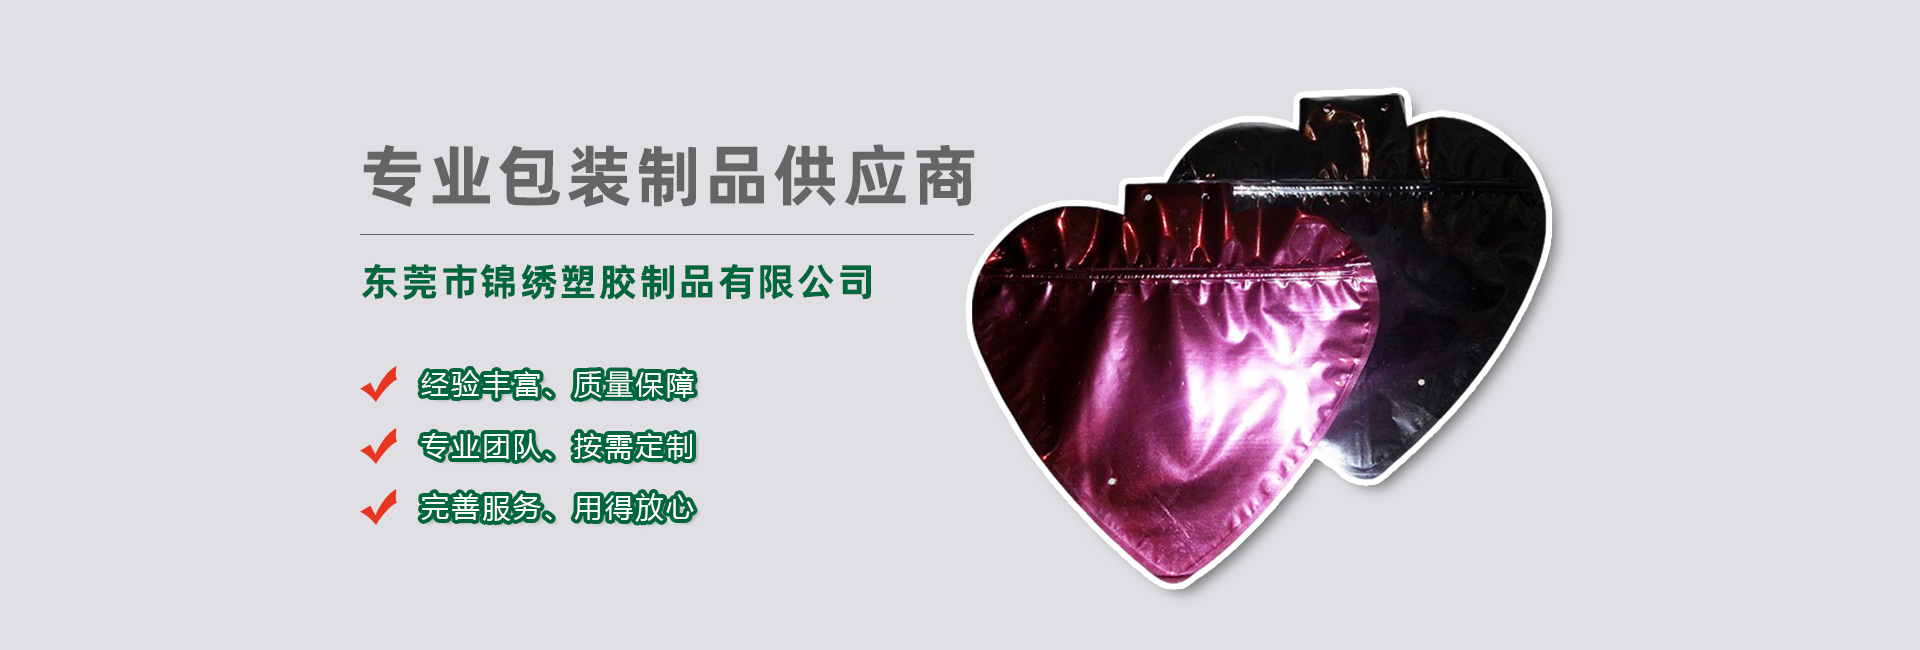 宁夏食品袋banner